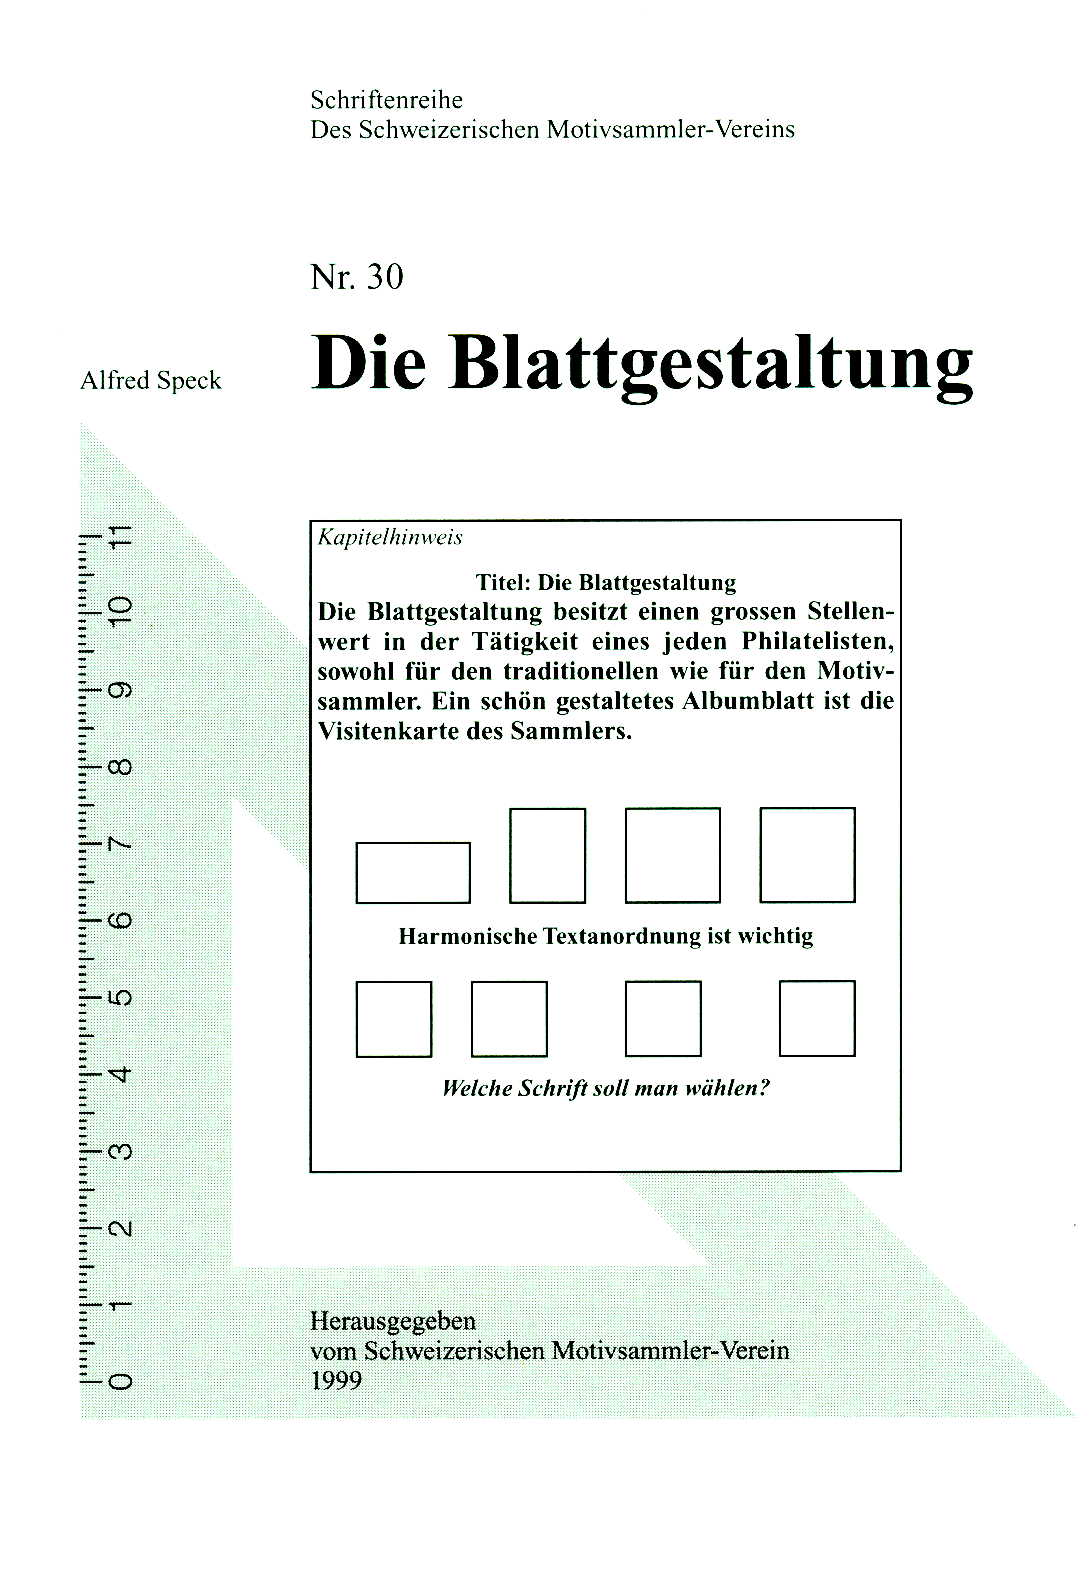 Speck Handbuch Die Blattgestaltung SMV-Handbuch Nr. 30 1. Auflag